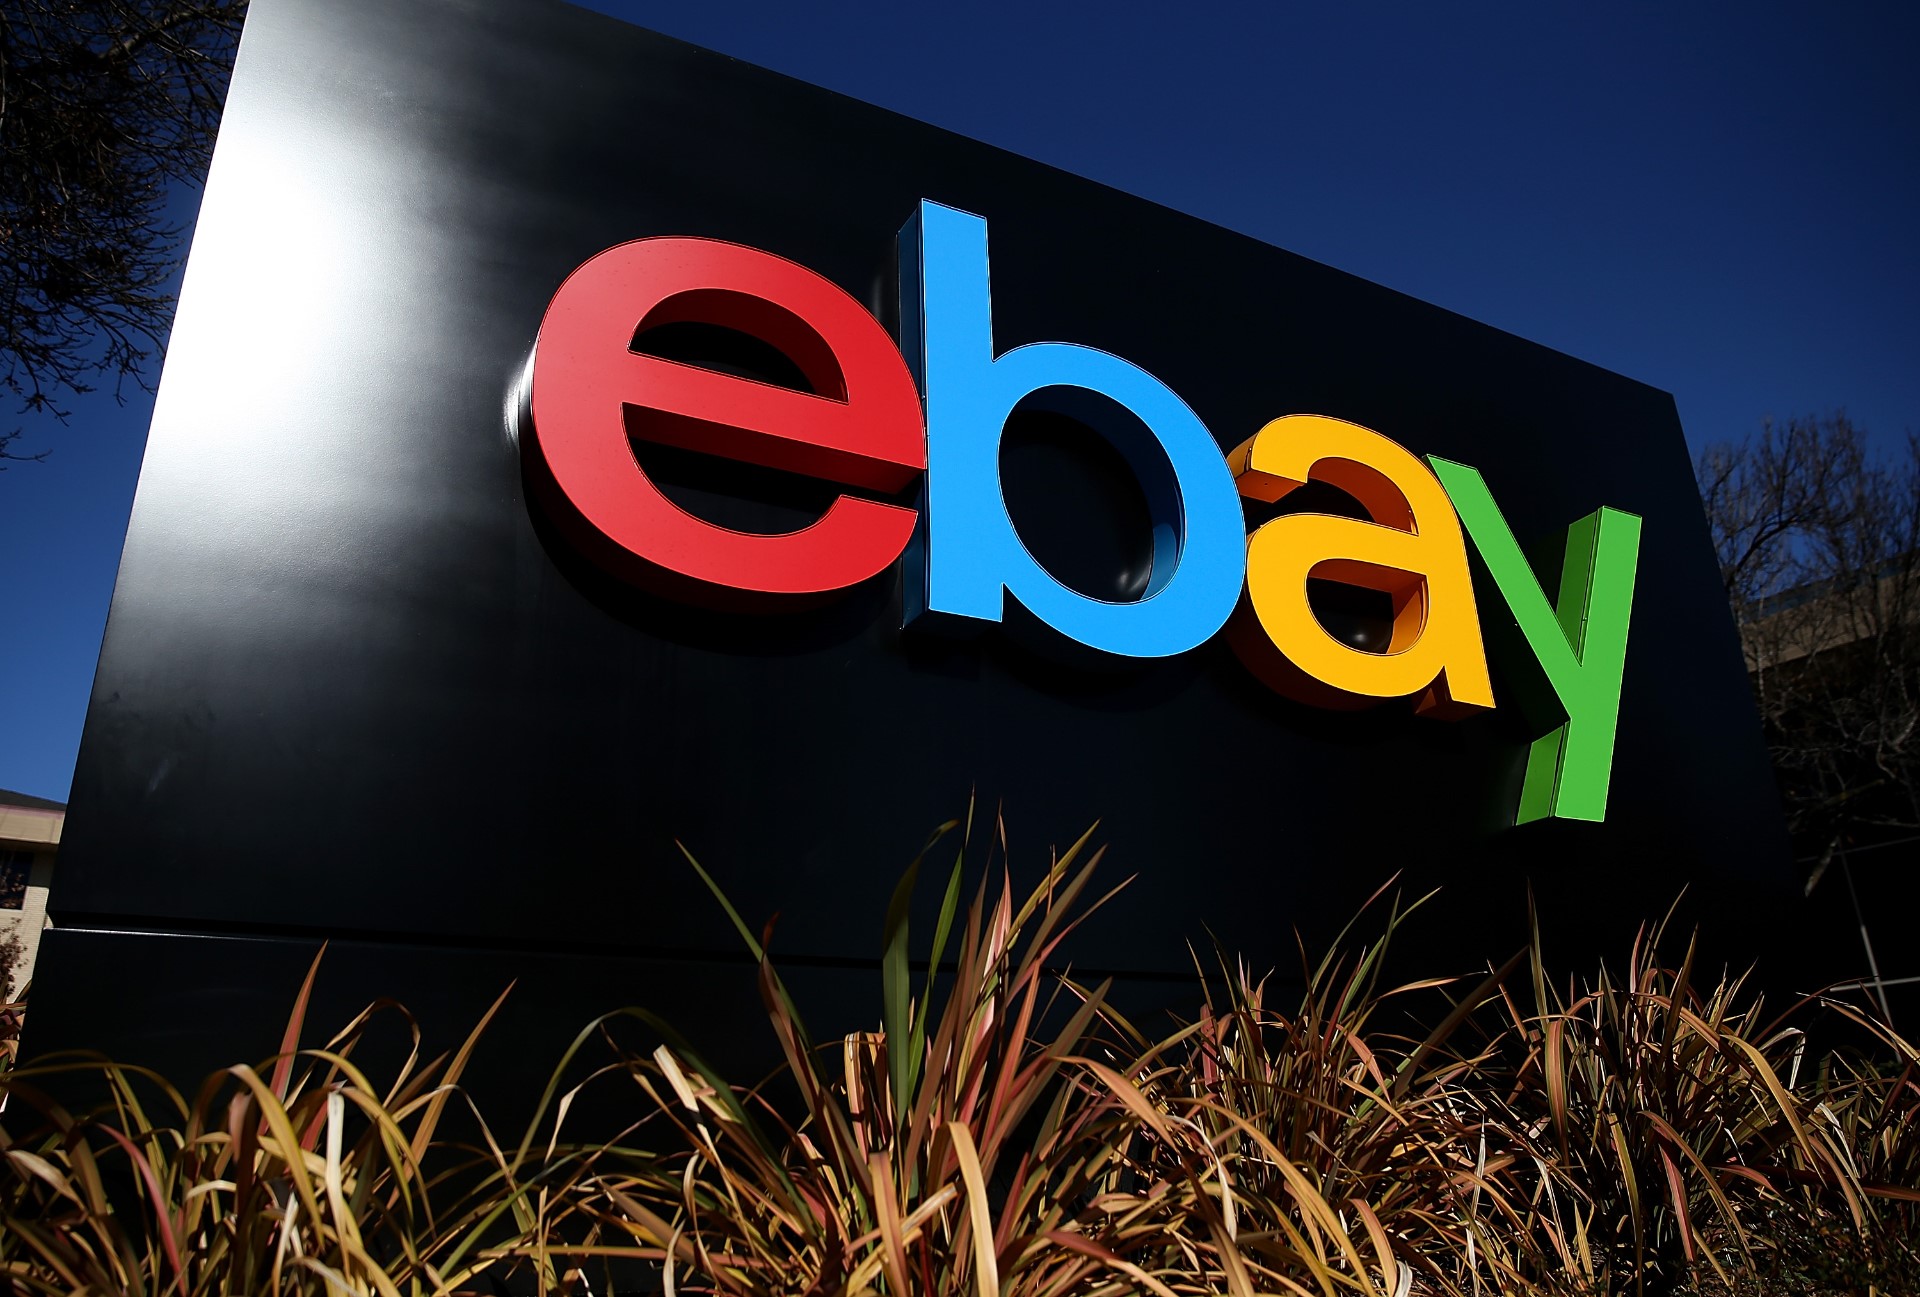 1995年9月4日拍卖网站ebay（前身为Actionweb）正式成立